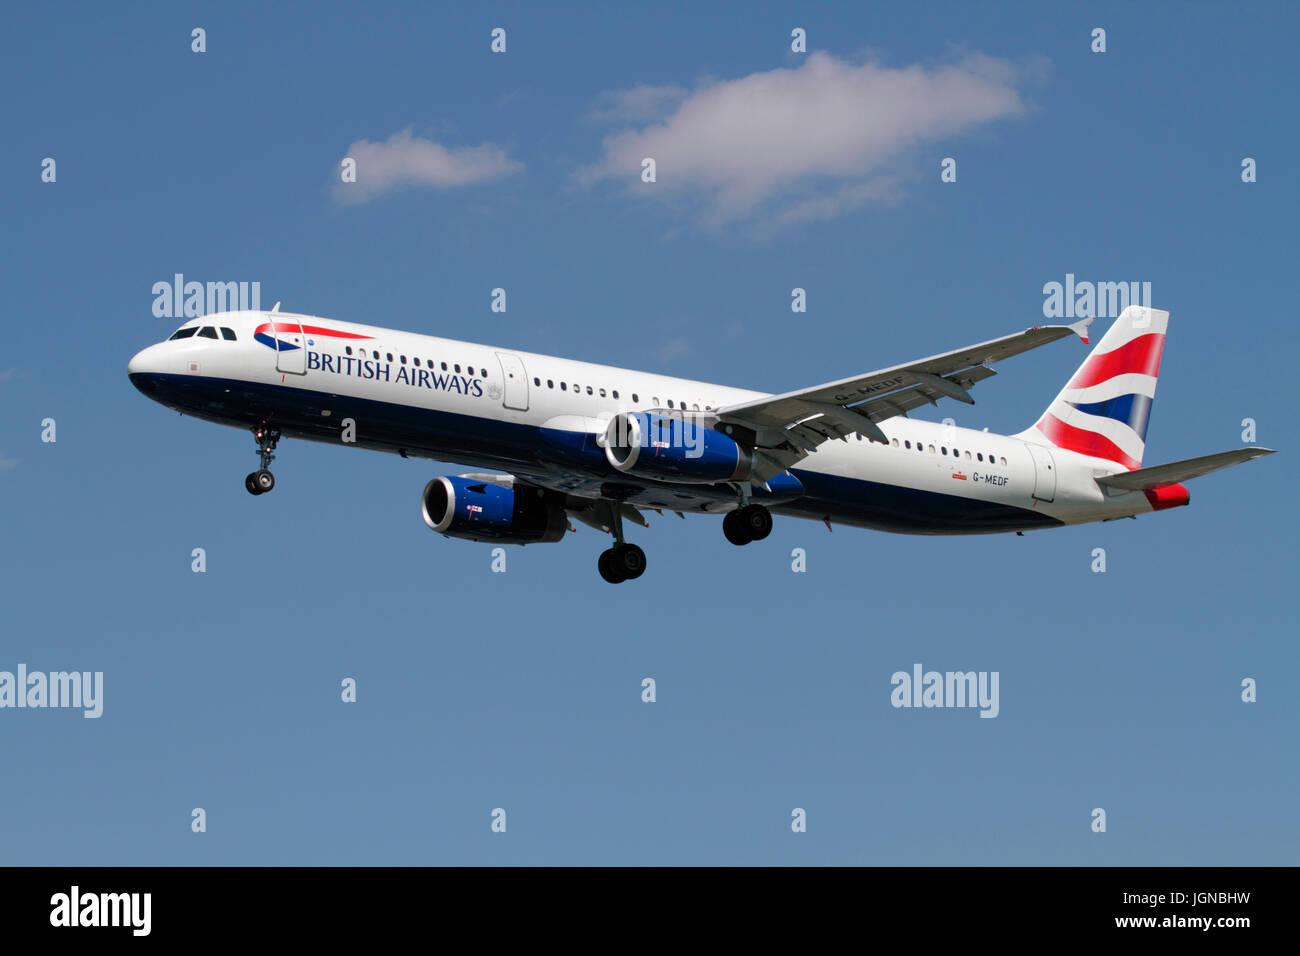 Aviazione civile. British Airways Airbus A321-200 aereo passeggeri sulla rotta di avvicinamento contro un cielo blu Foto Stock